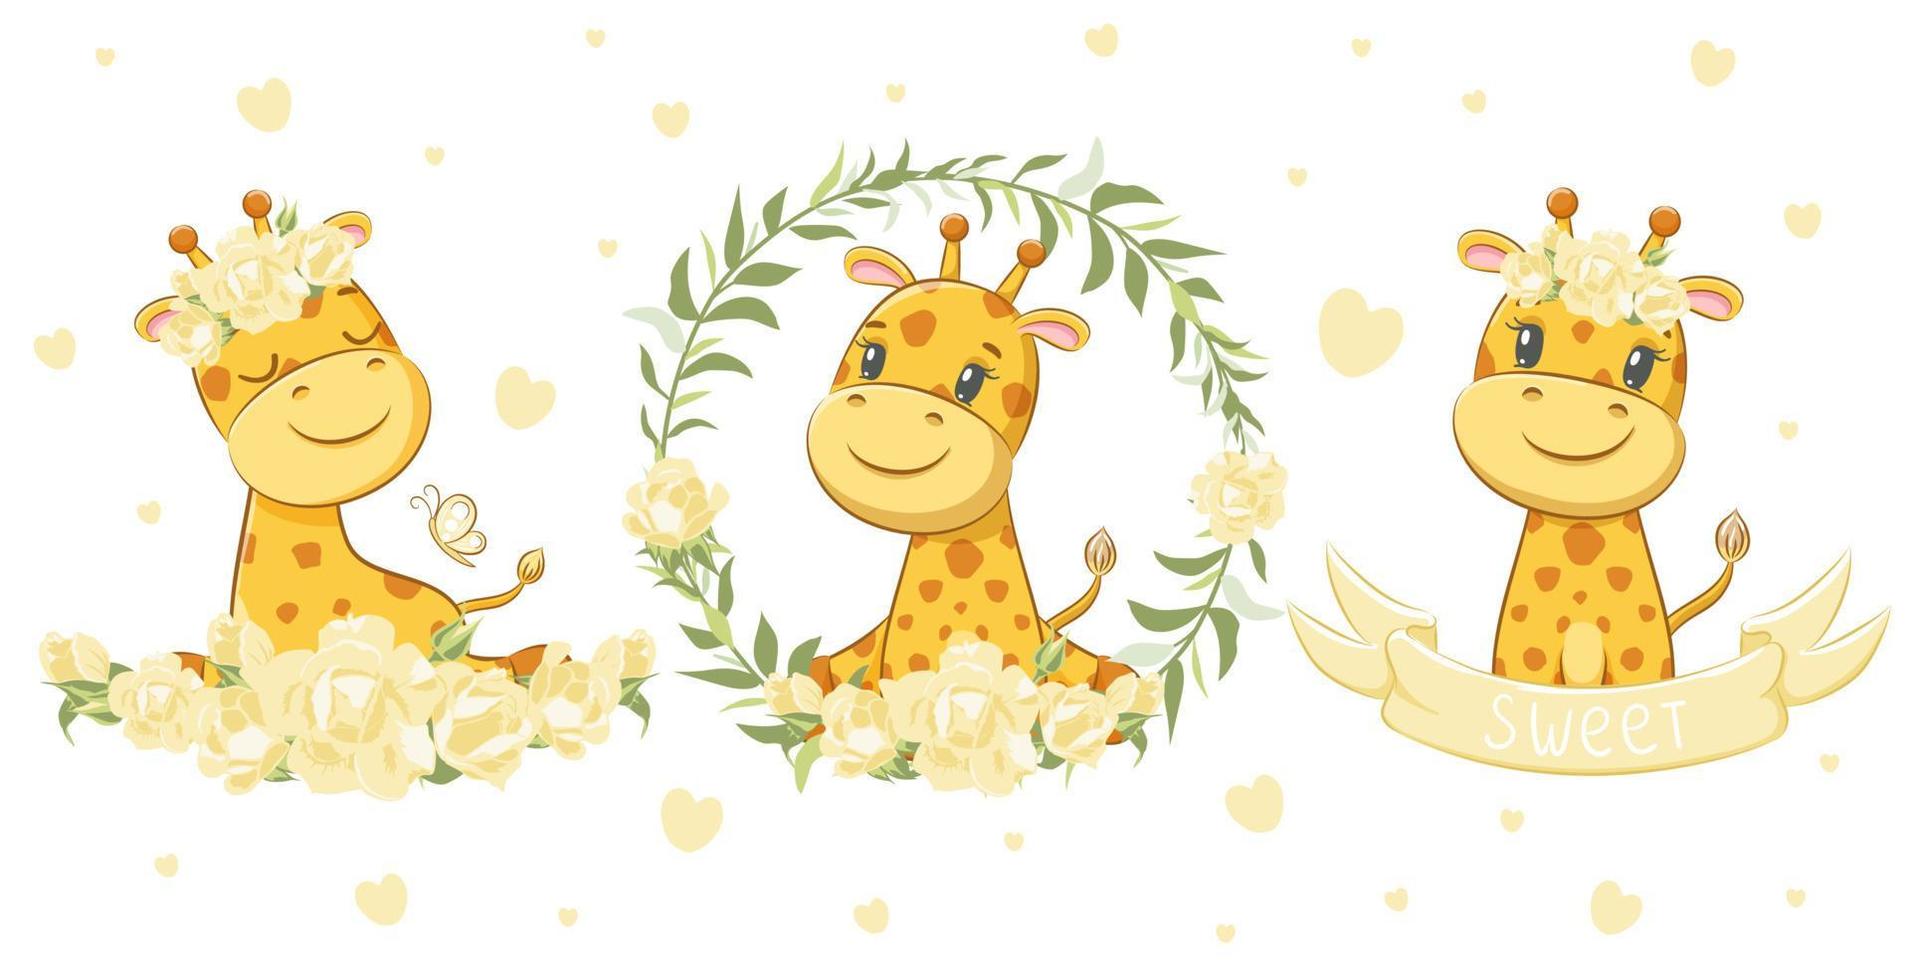 ett set med 3 söta och söta giraffer. vektor illustration av en tecknad film.